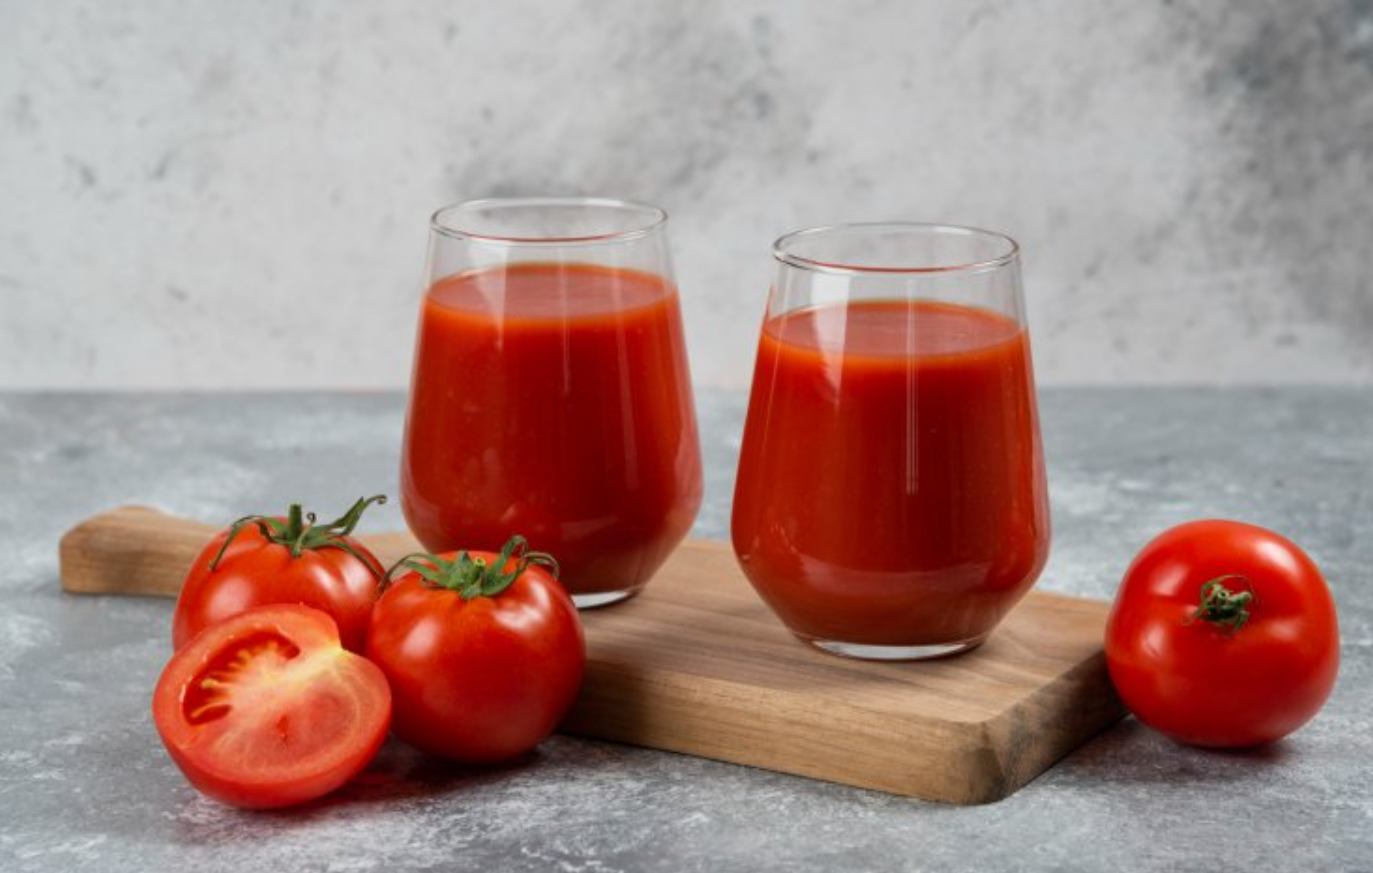 Tomato juice recipe for winter